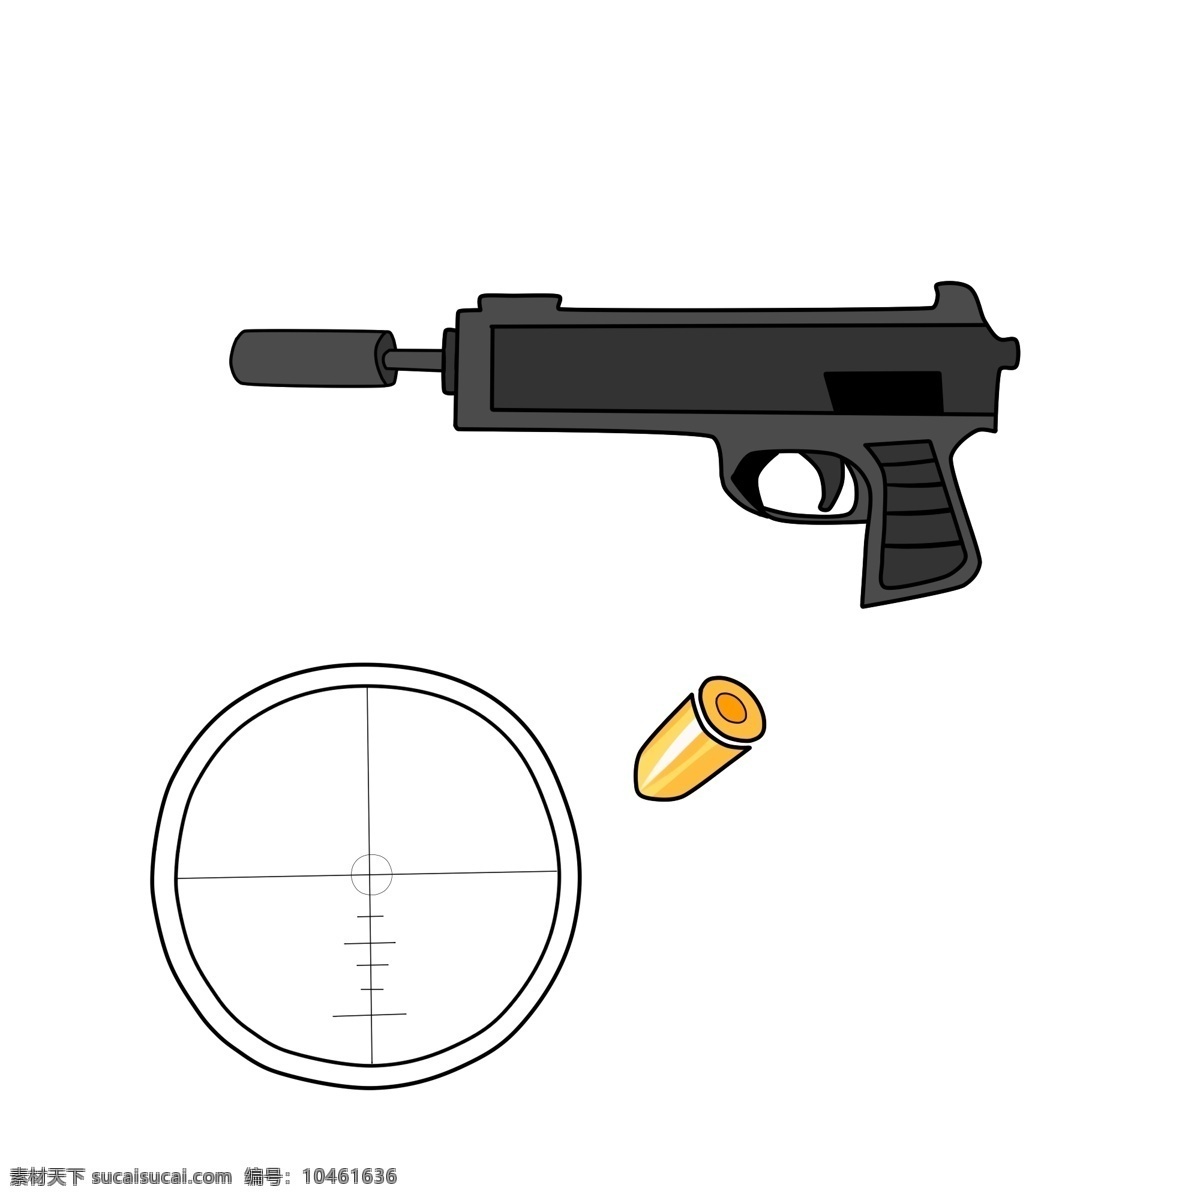 黑色 玩具 手枪 插画 玩具枪 黑色的手枪 手枪插画 玩具手枪插画 卡通玩具插画 黄色的子弹头